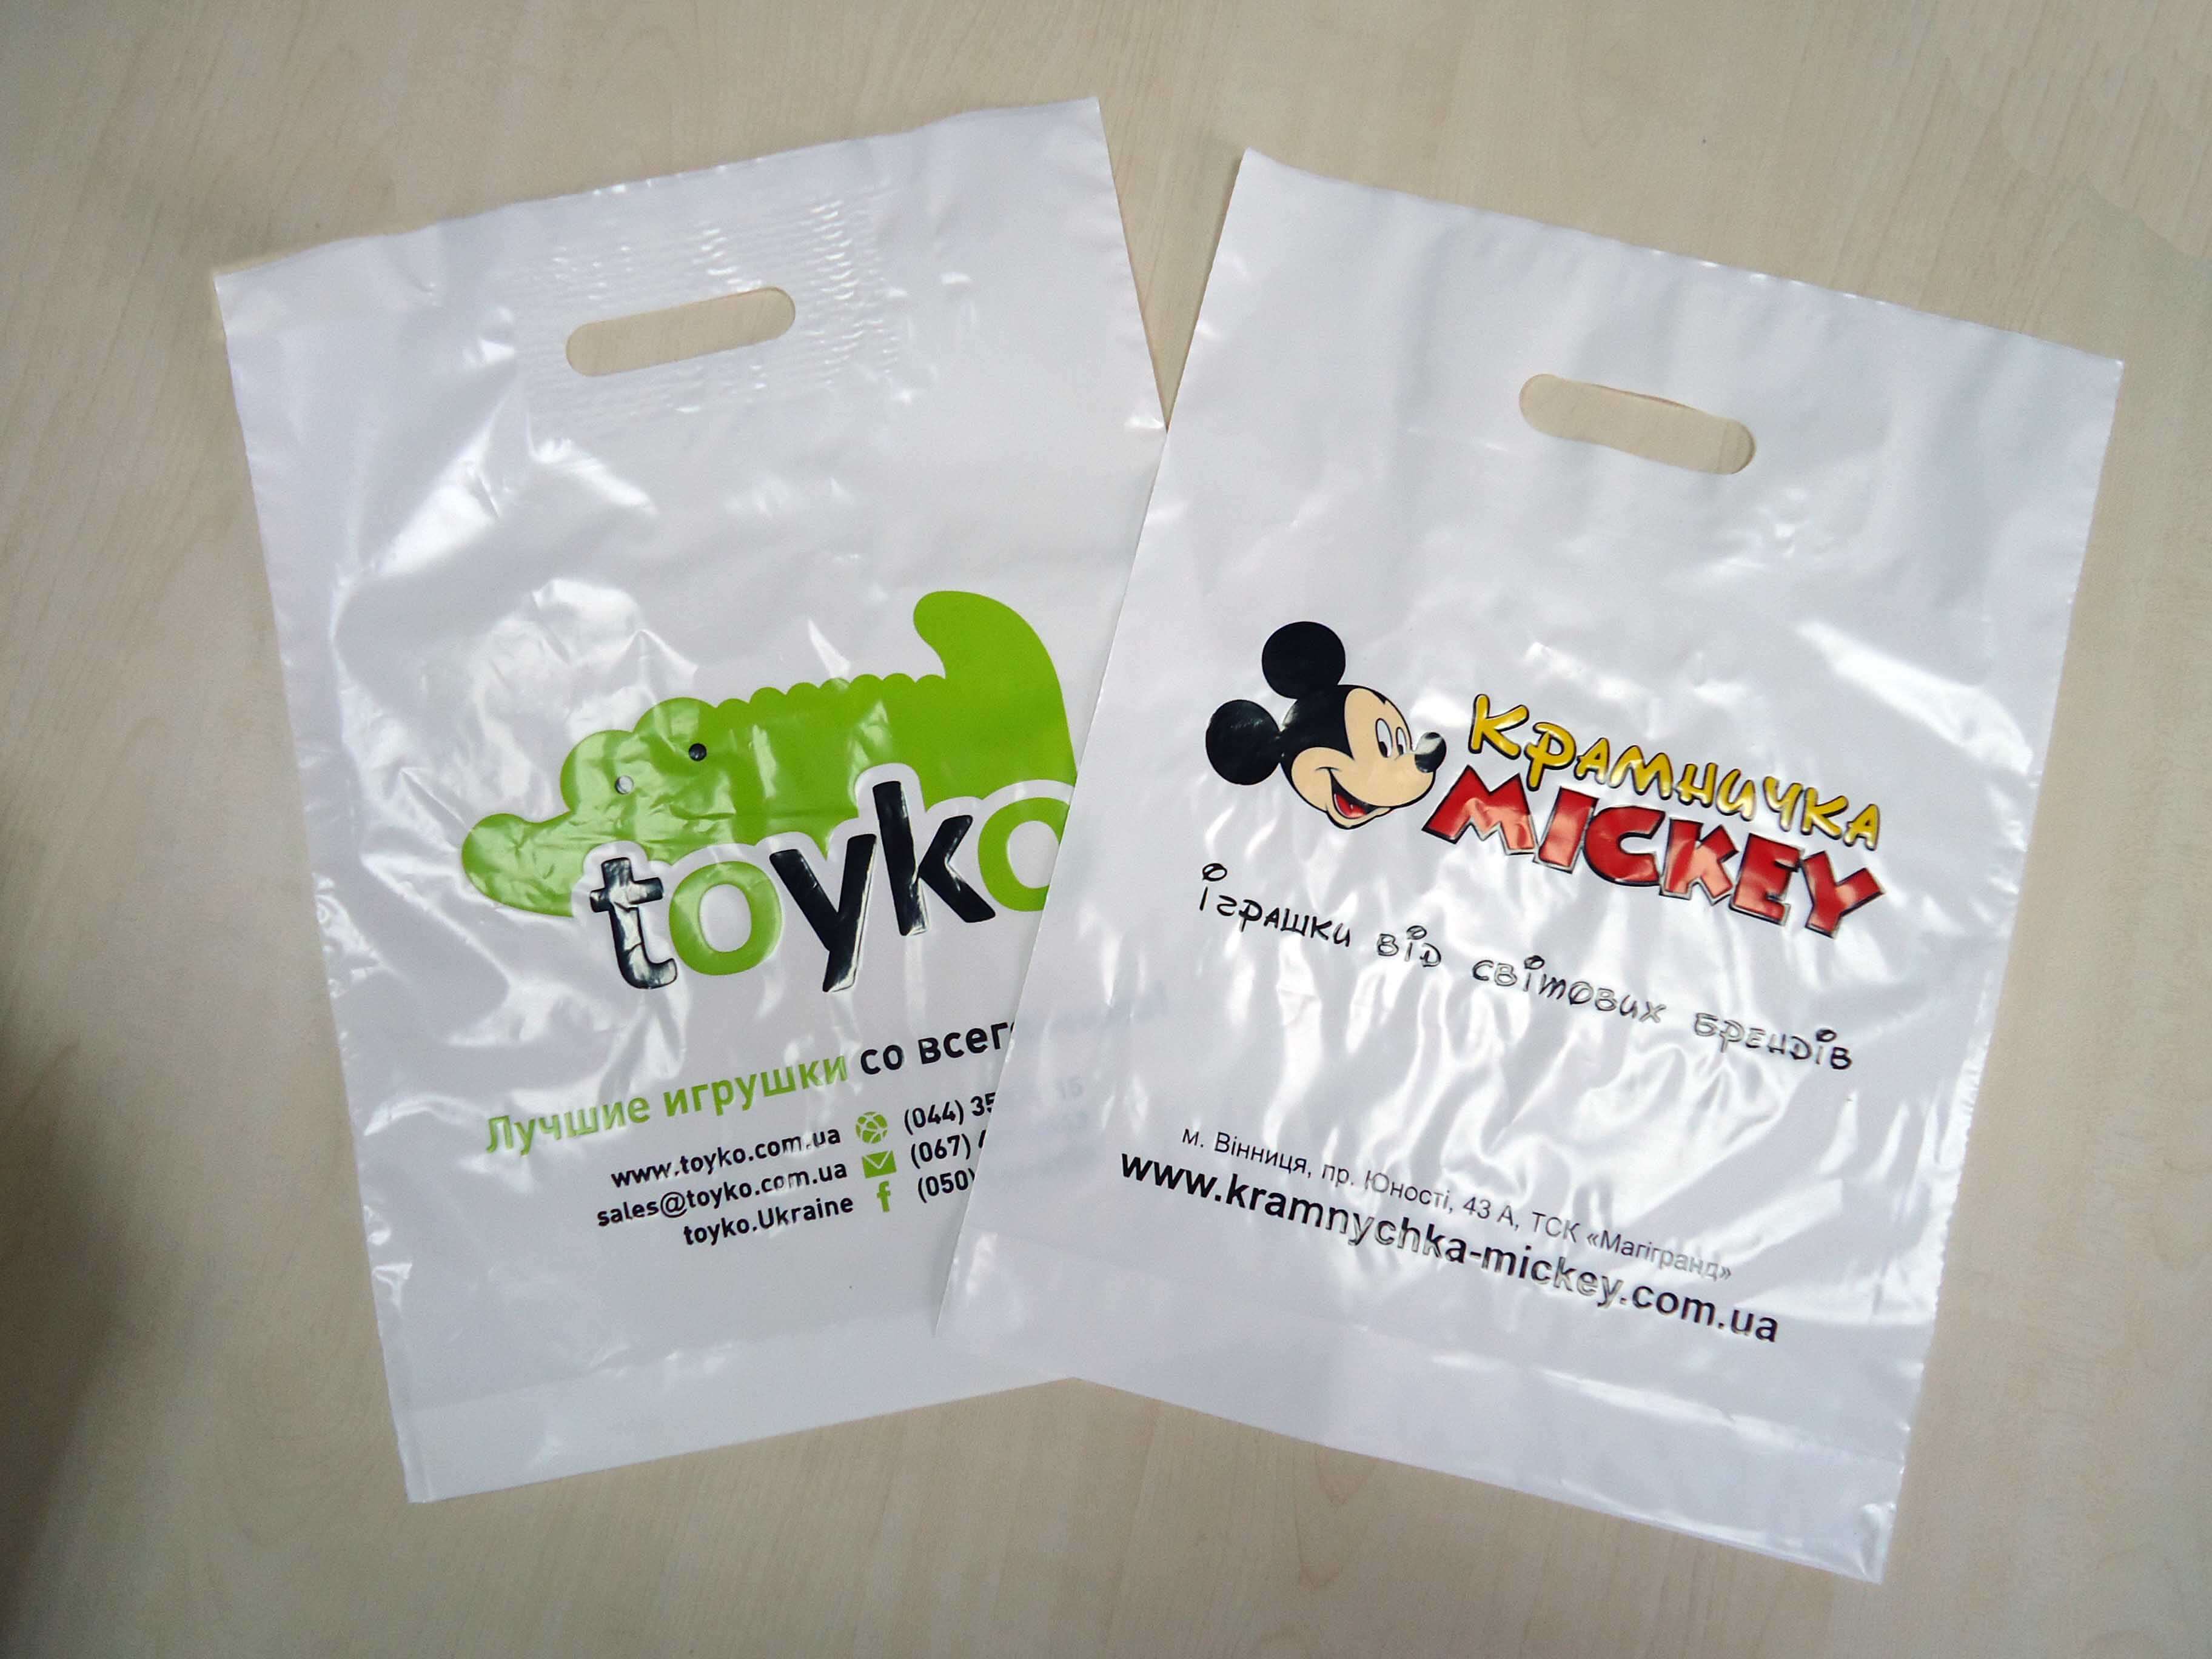 Реклама бренда на пакете с логотипом Chernigov Package - Фото DSC03558